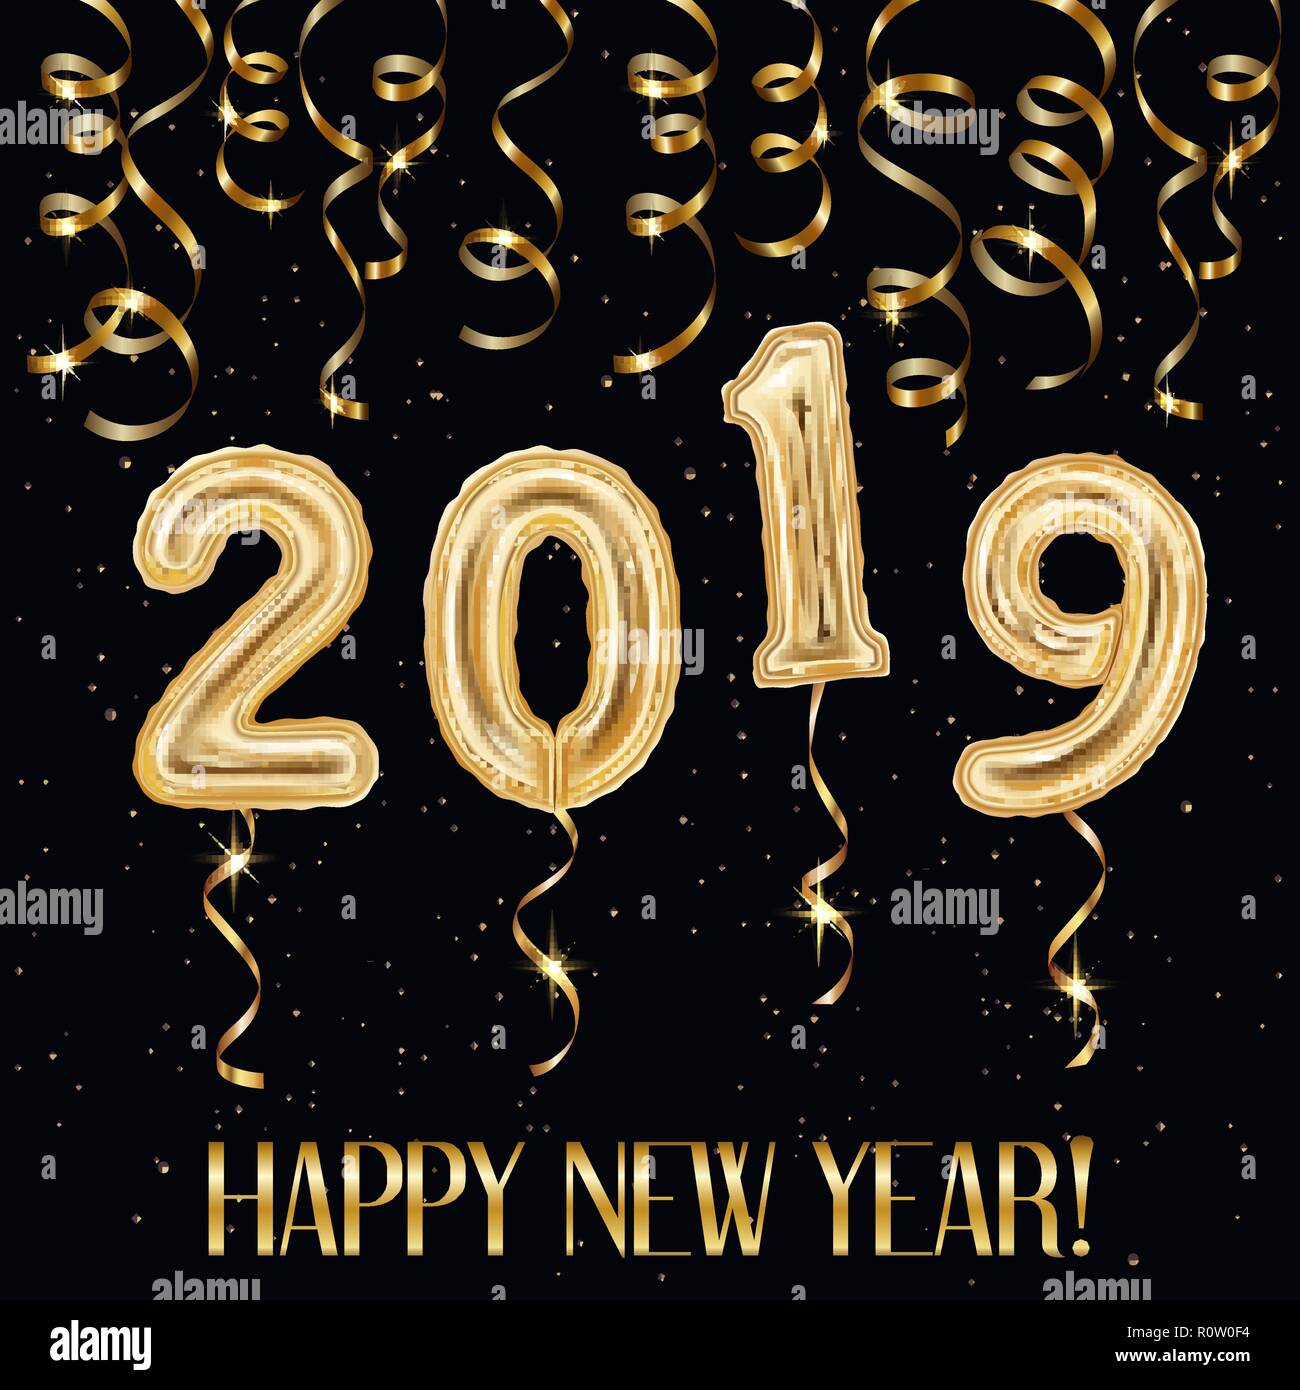 Realistische goldene Luftballons und Luftschlangen, Konfetti 2019 Frohes neues Jahr Inschrift auf schwarzen Hintergrund, Vektor, Abbildung Stock Vektor